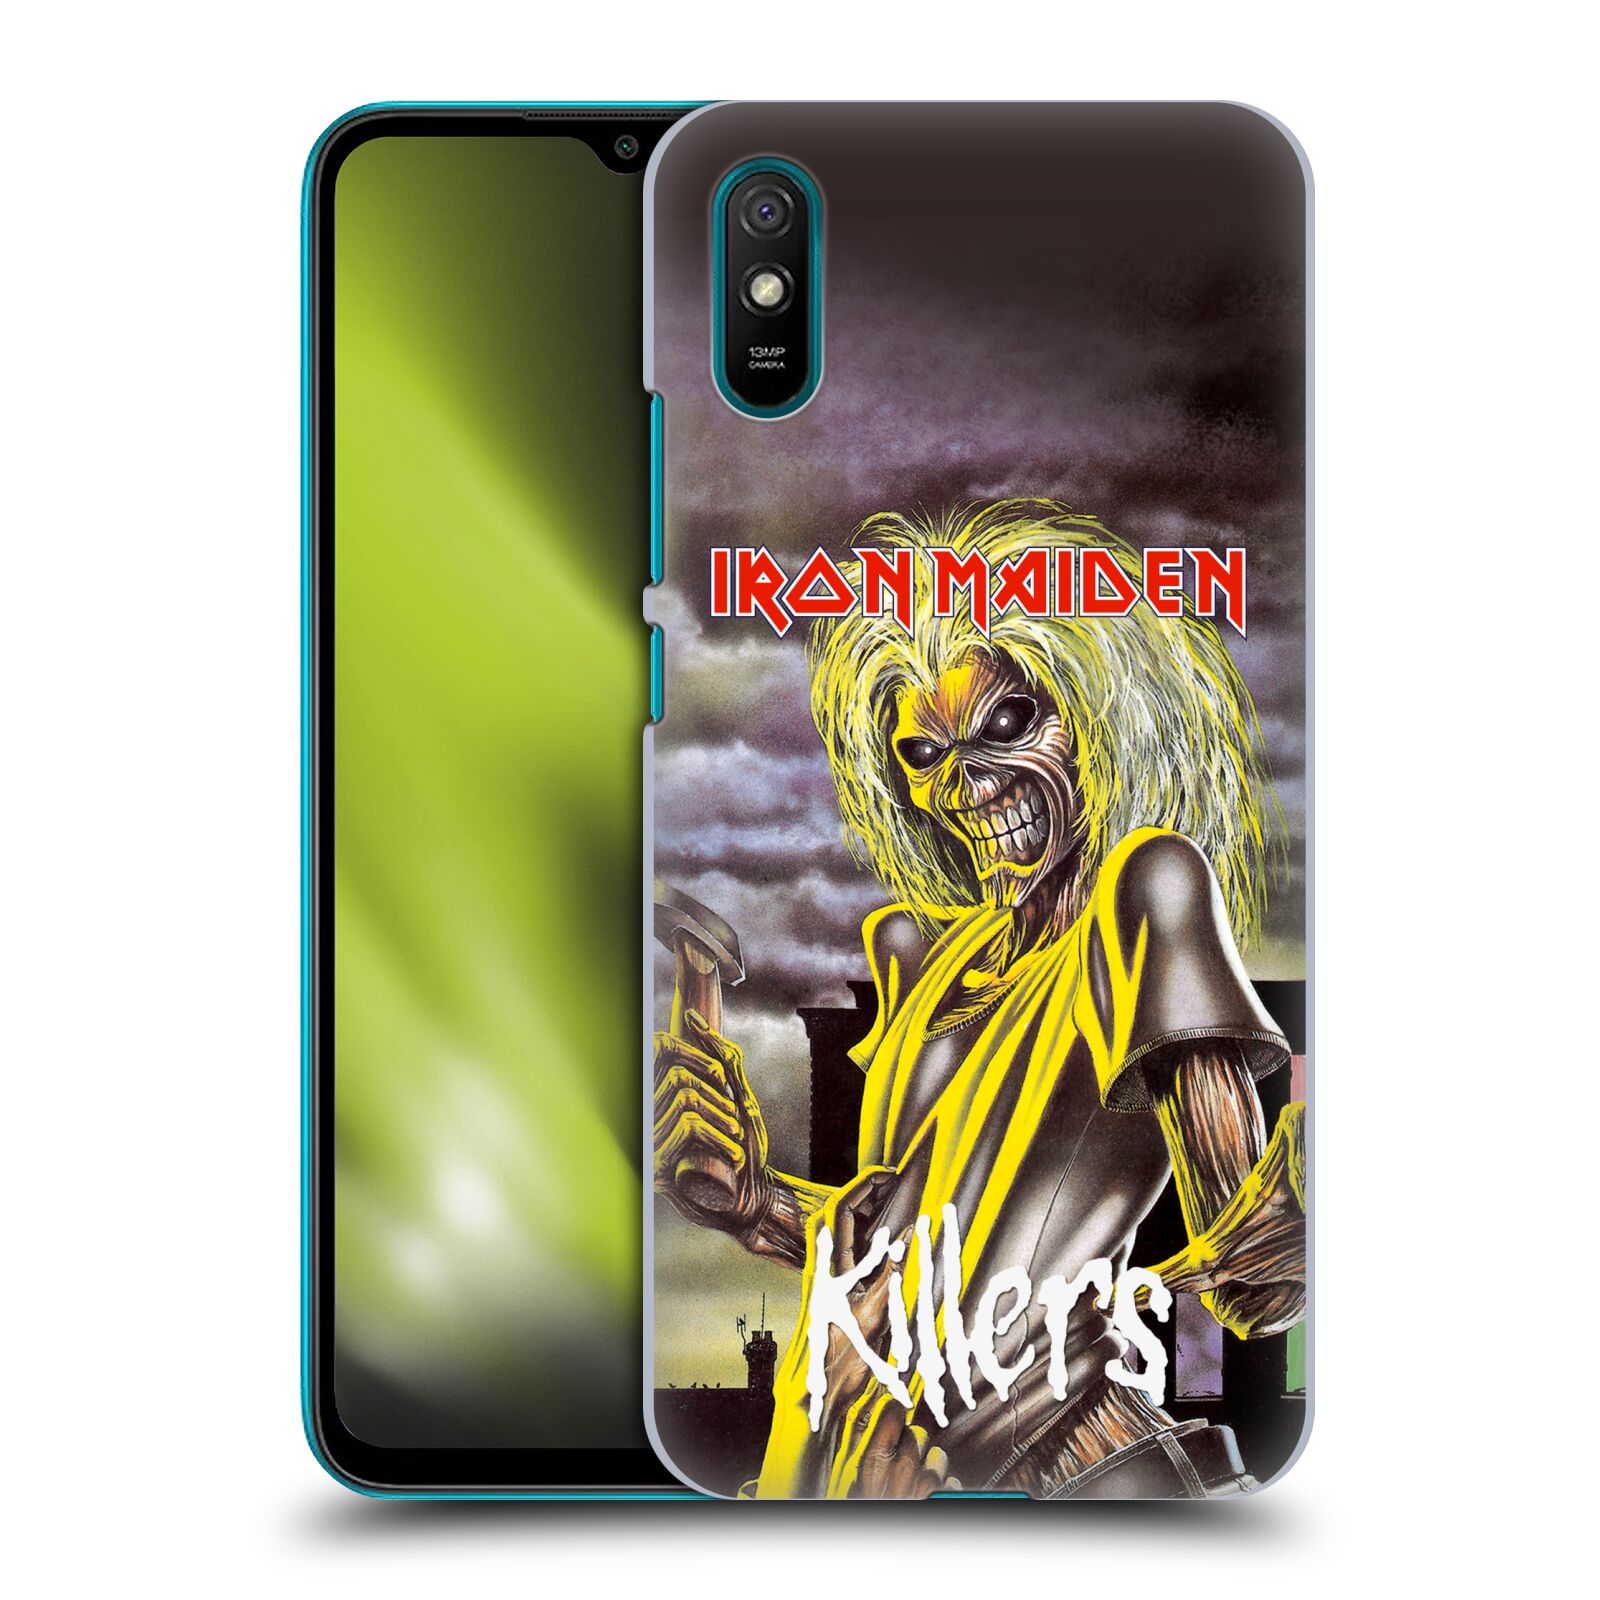 Plastové pouzdro na mobil Xiaomi Redmi 9A / Xiaomi Redmi 9AT - Head Case - Iron Maiden - Killers (Plastový kryt, pouzdro, obal na mobilní telefon Xiaomi Redmi 9A / Xiaomi Redmi 9AT s motivem Iron Maiden - Killers)